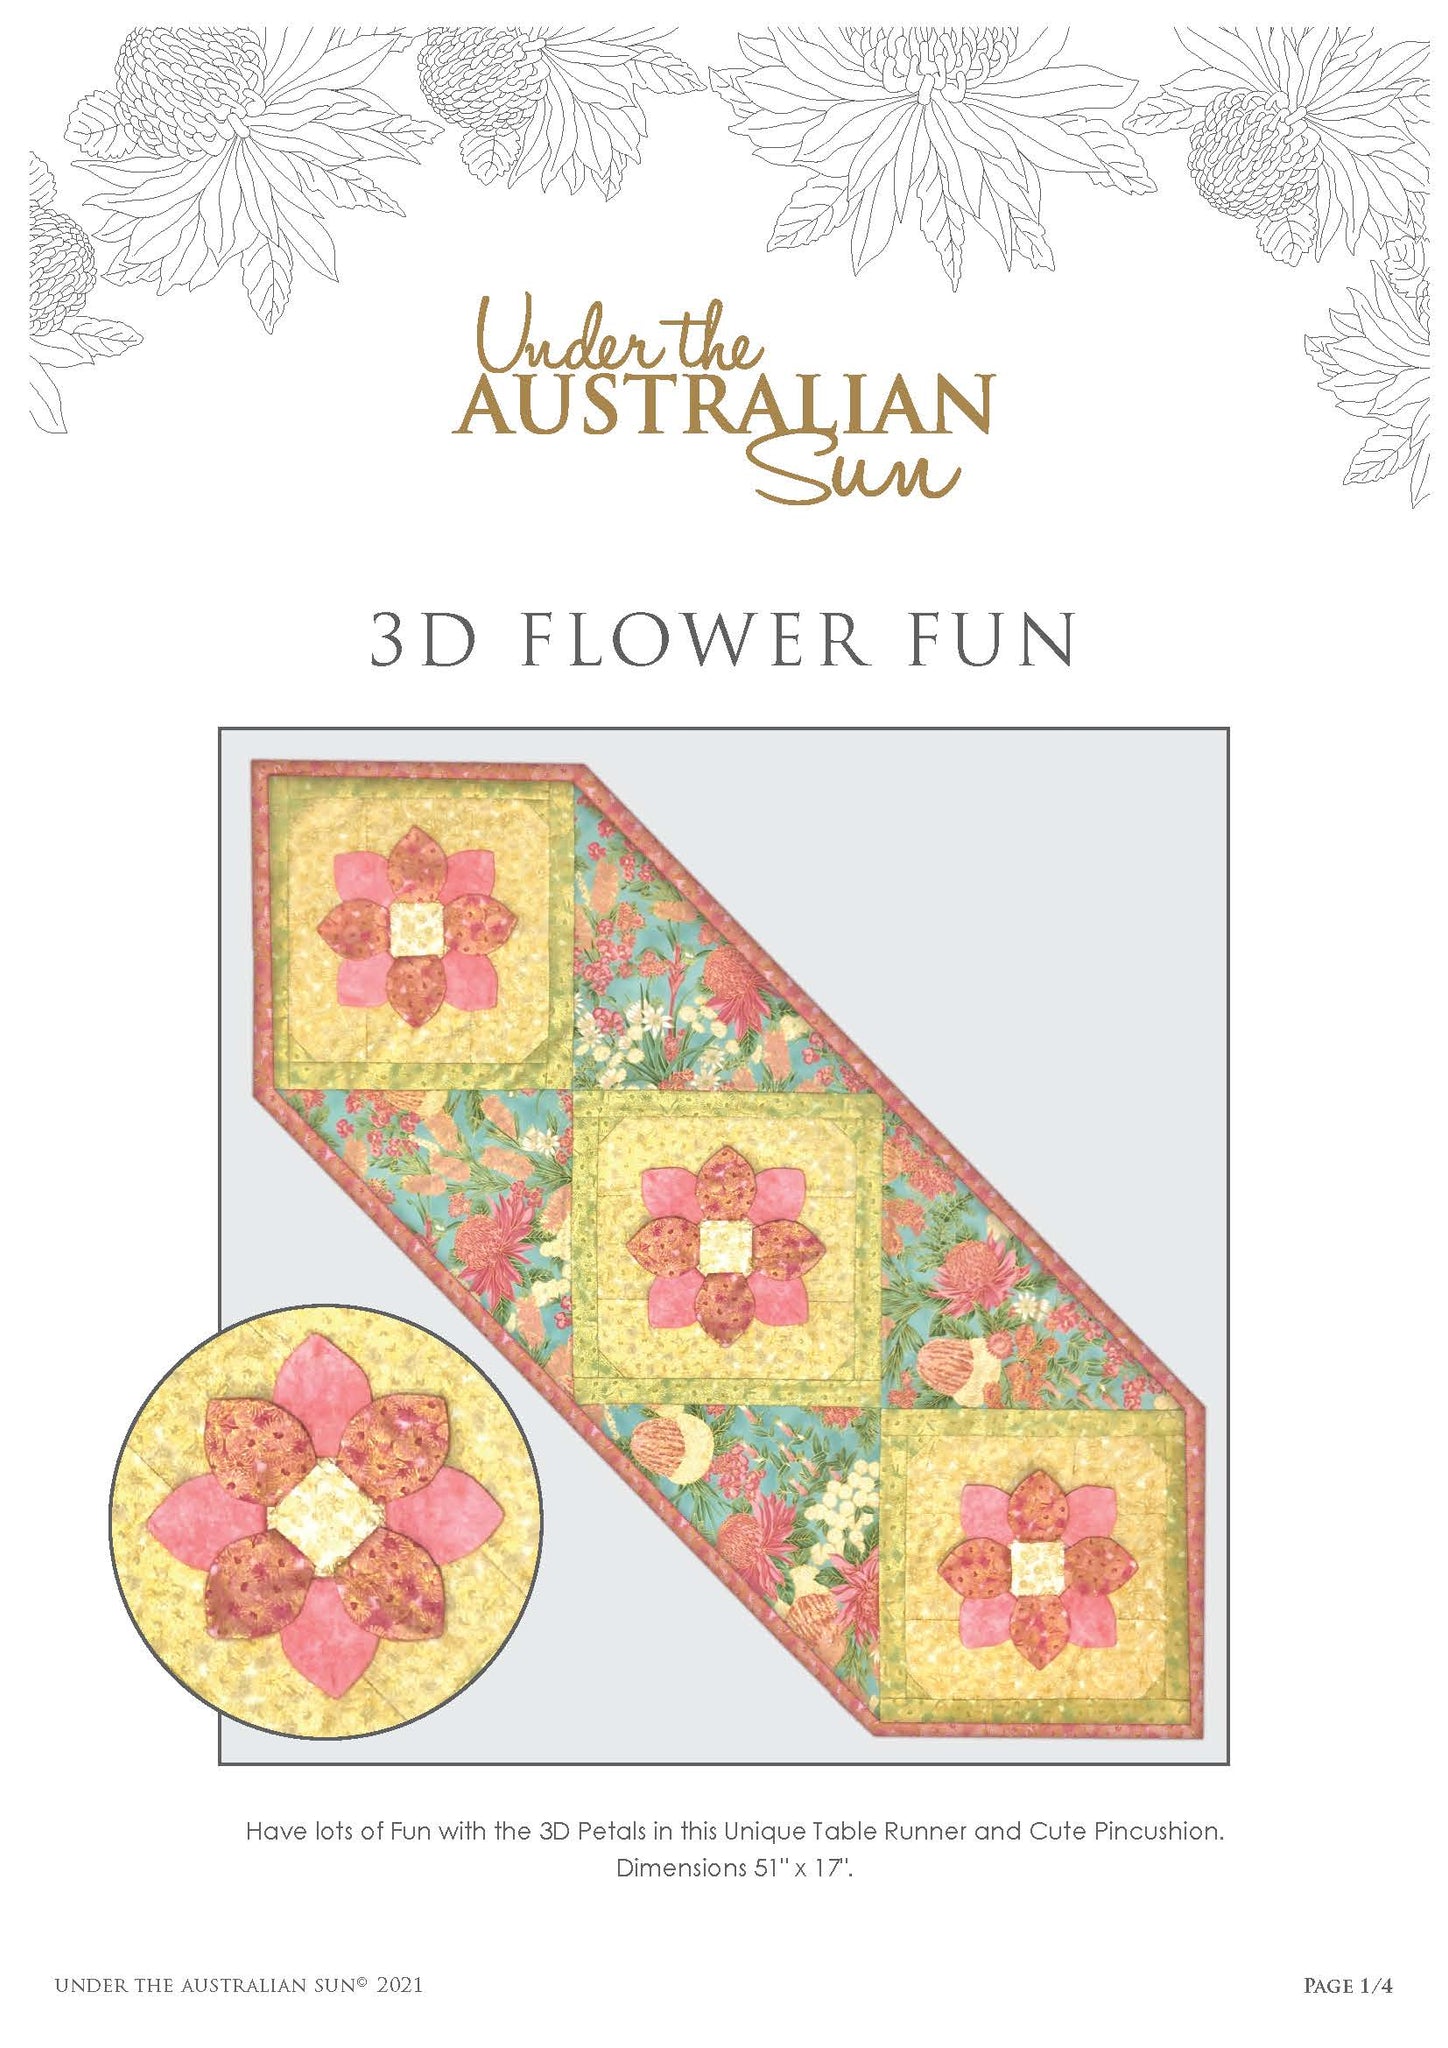 3D Flower Fun - 3DFF-AUS